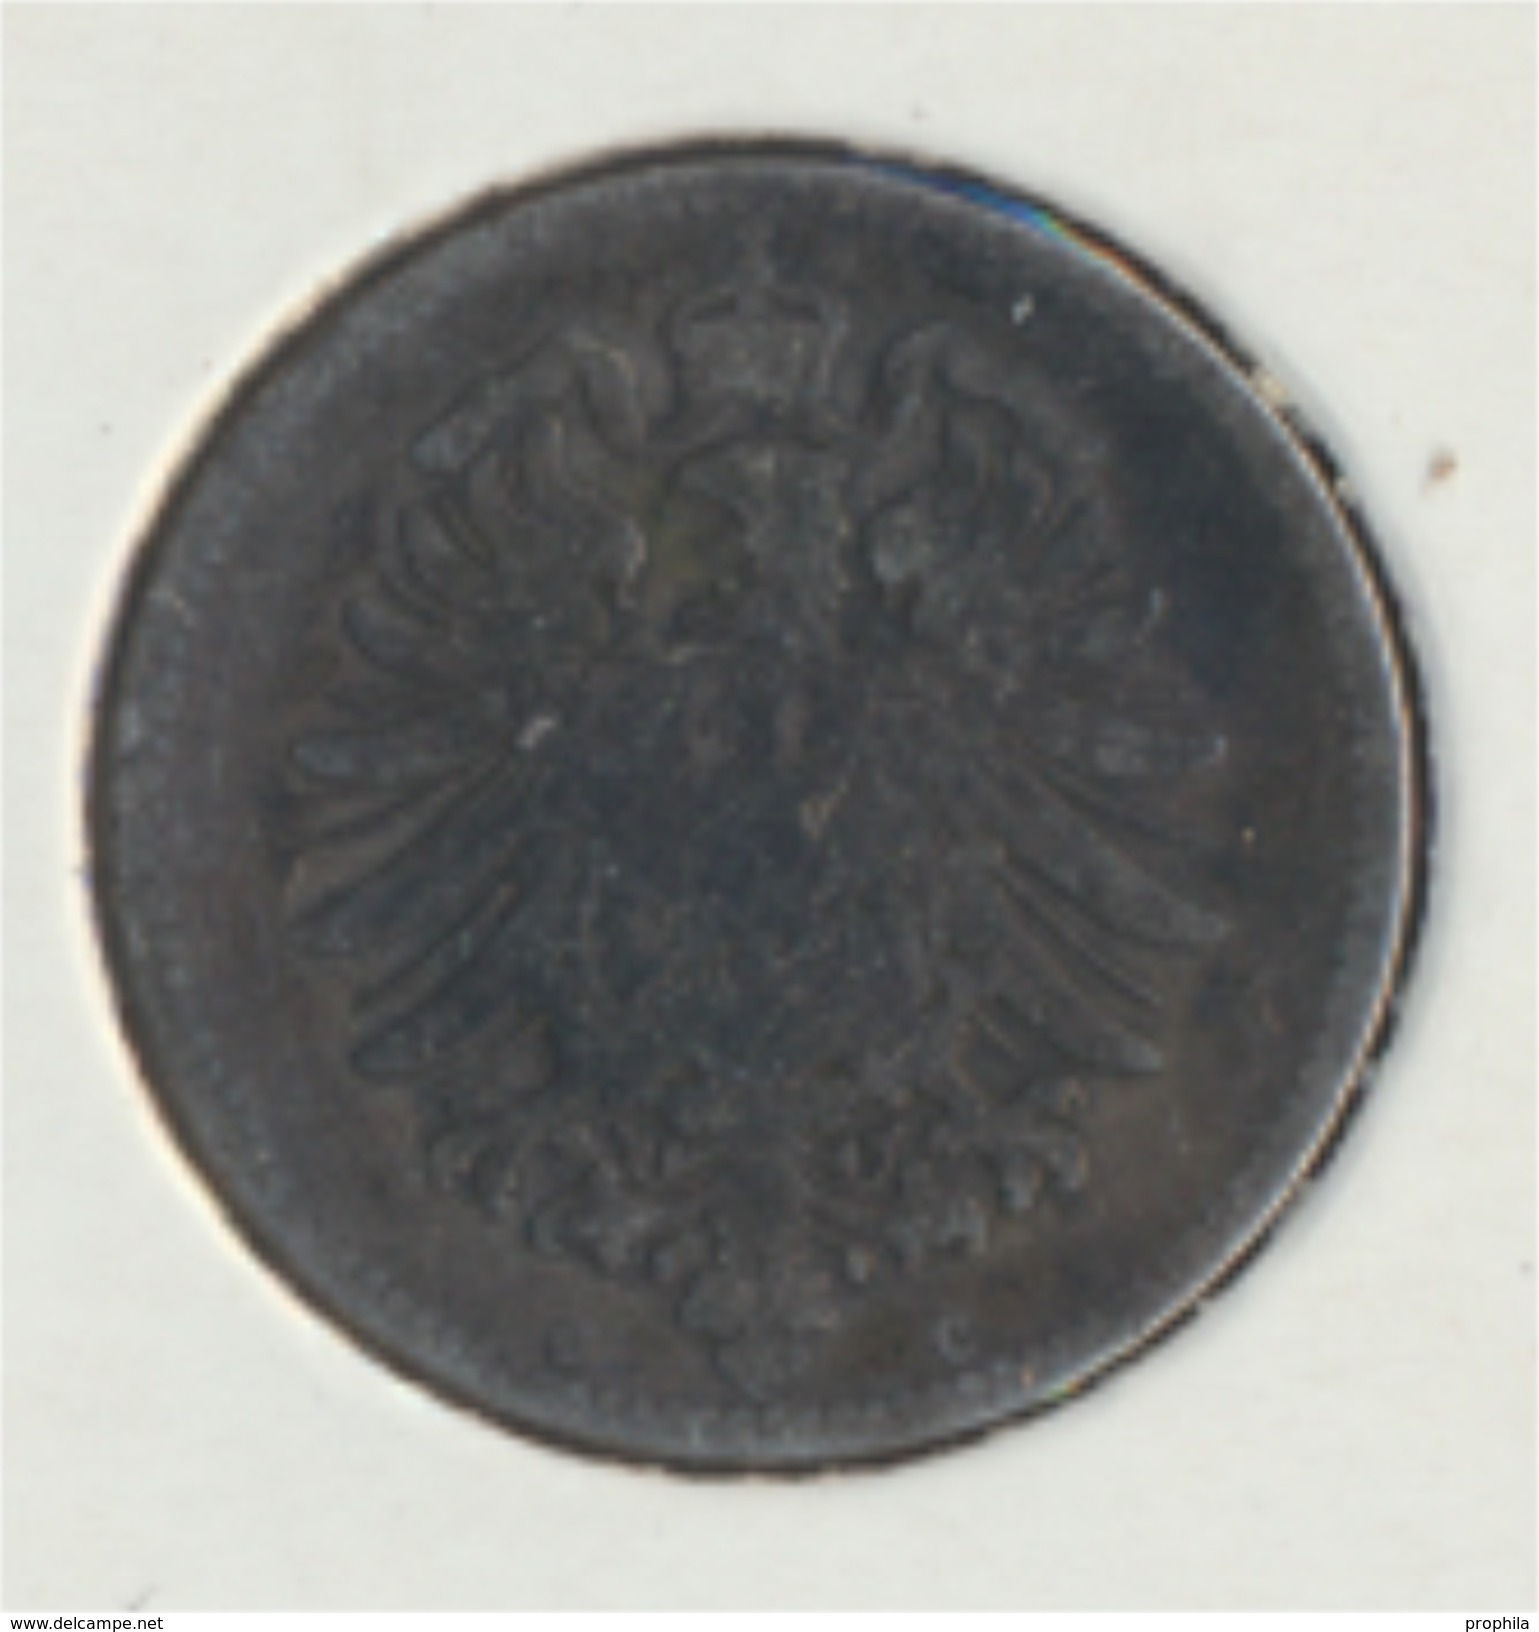 Deutsches Reich Jägernr: 9 1874 C Sehr Schön Silber 1874 1 Mark Kleiner Reichsadler (7849301 - 1 Mark